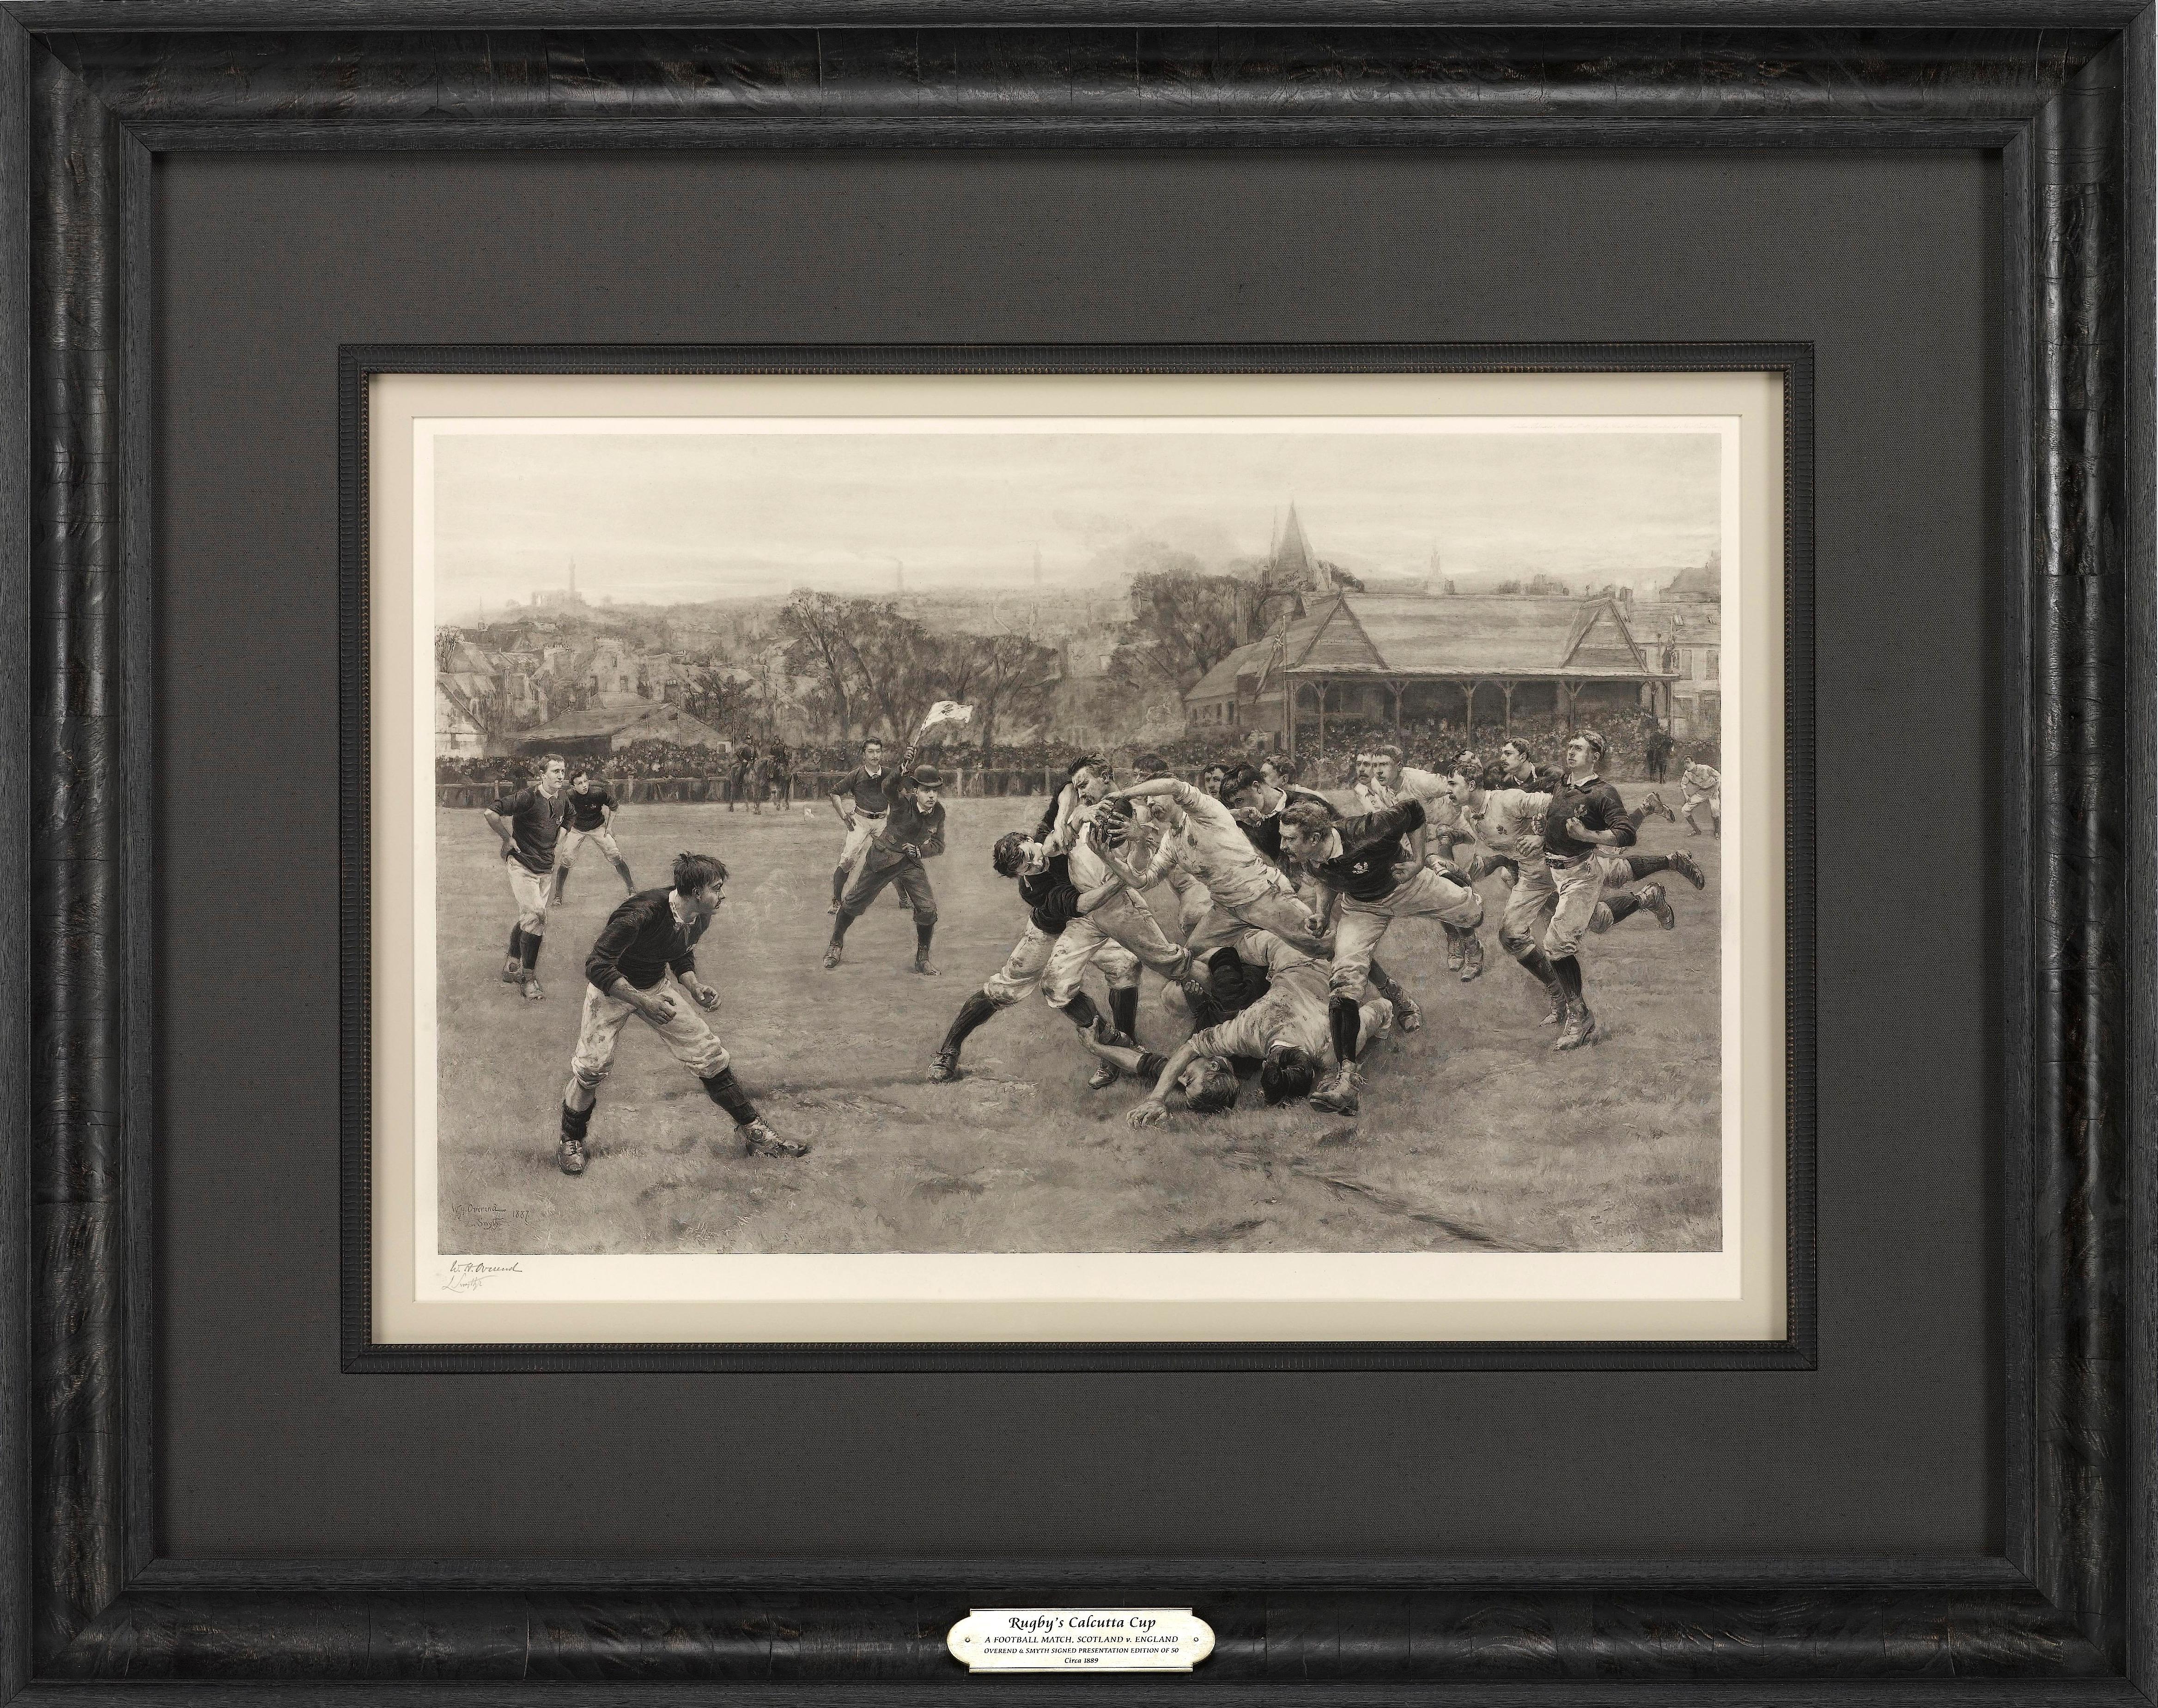 Dies ist die 1889 von William H. Overend (1851-1898) und Lionel Smythe (1839-1918) herausgegebene Erstausgabe des Calcutta Cup - ein Rugbyspiel zwischen Schottland und England, das über 100 Mal ausgetragen wurde, wobei das erste Spiel 1879